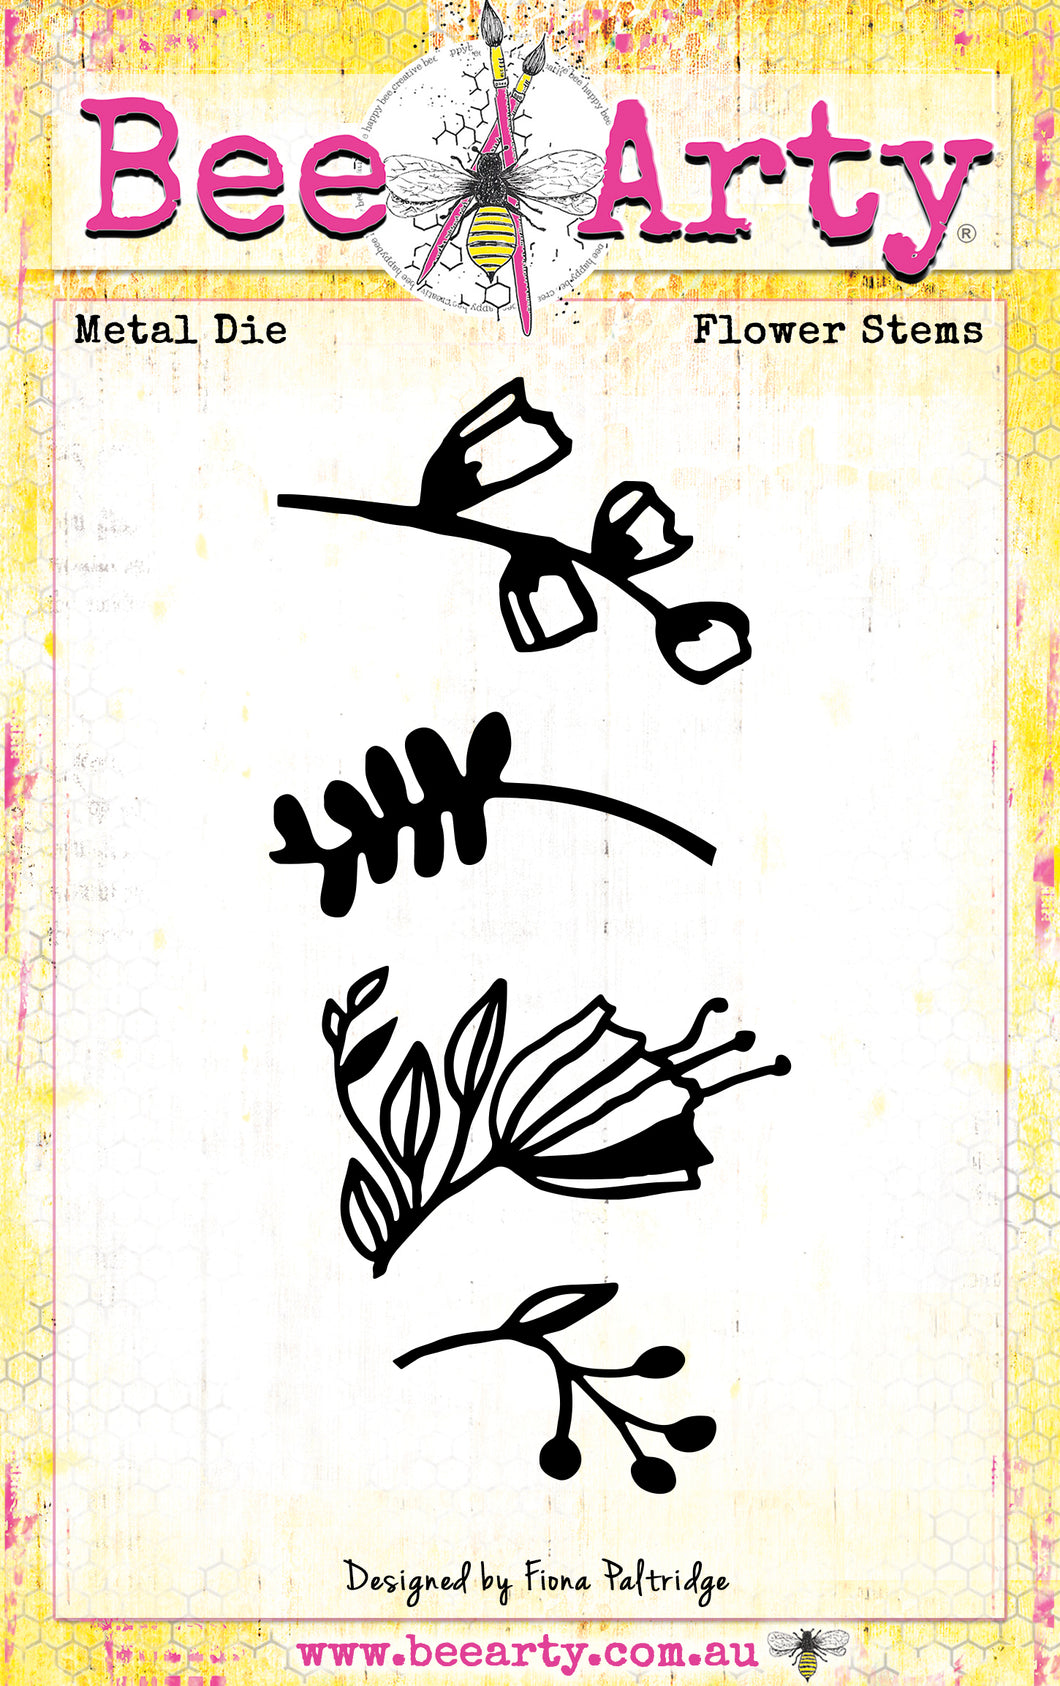 Flower Stems - Metal Die